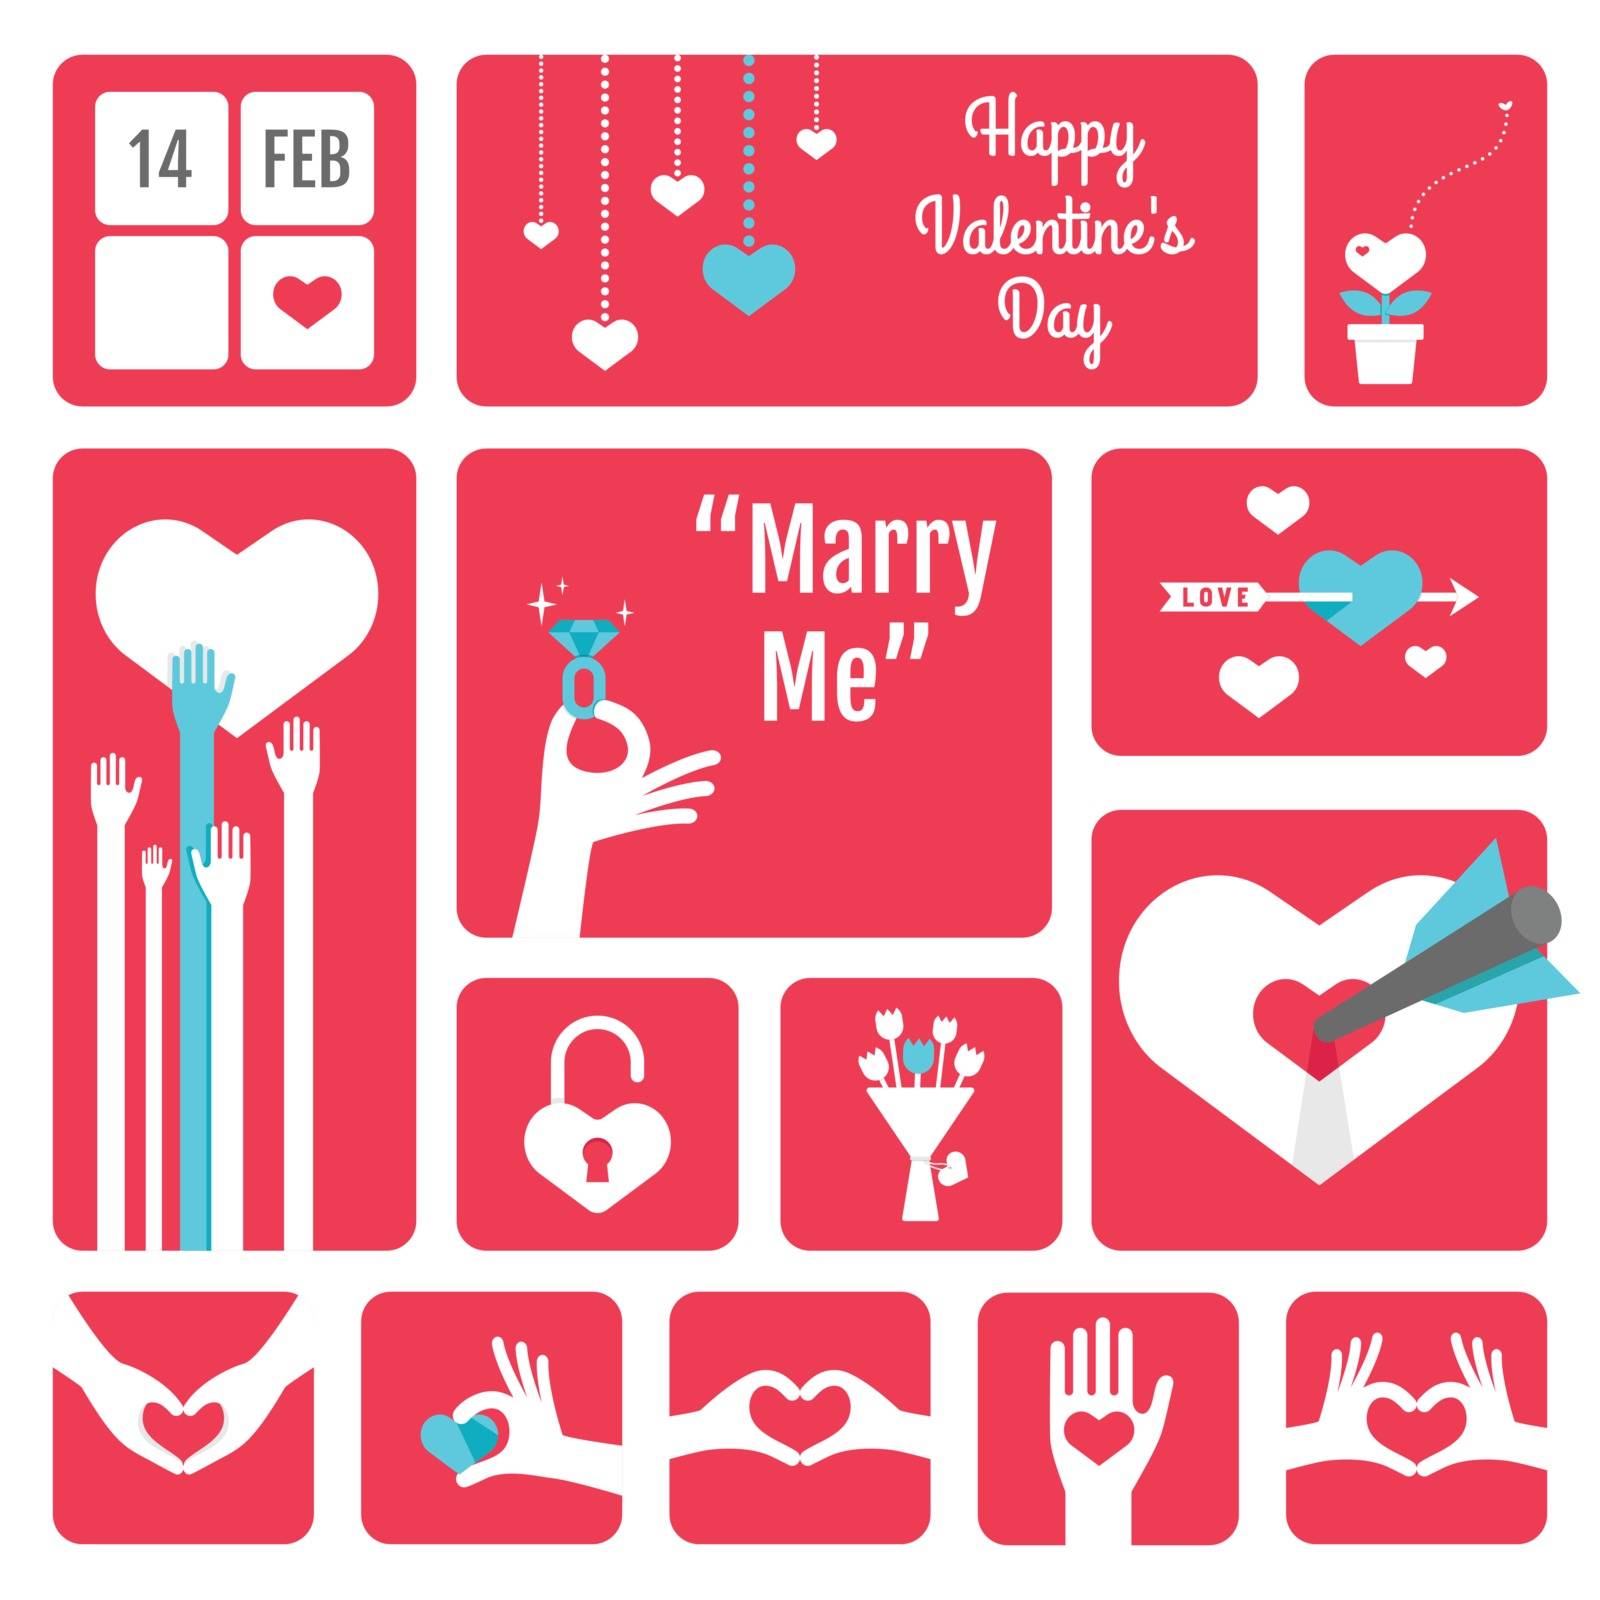 Happy valentines day, love icons